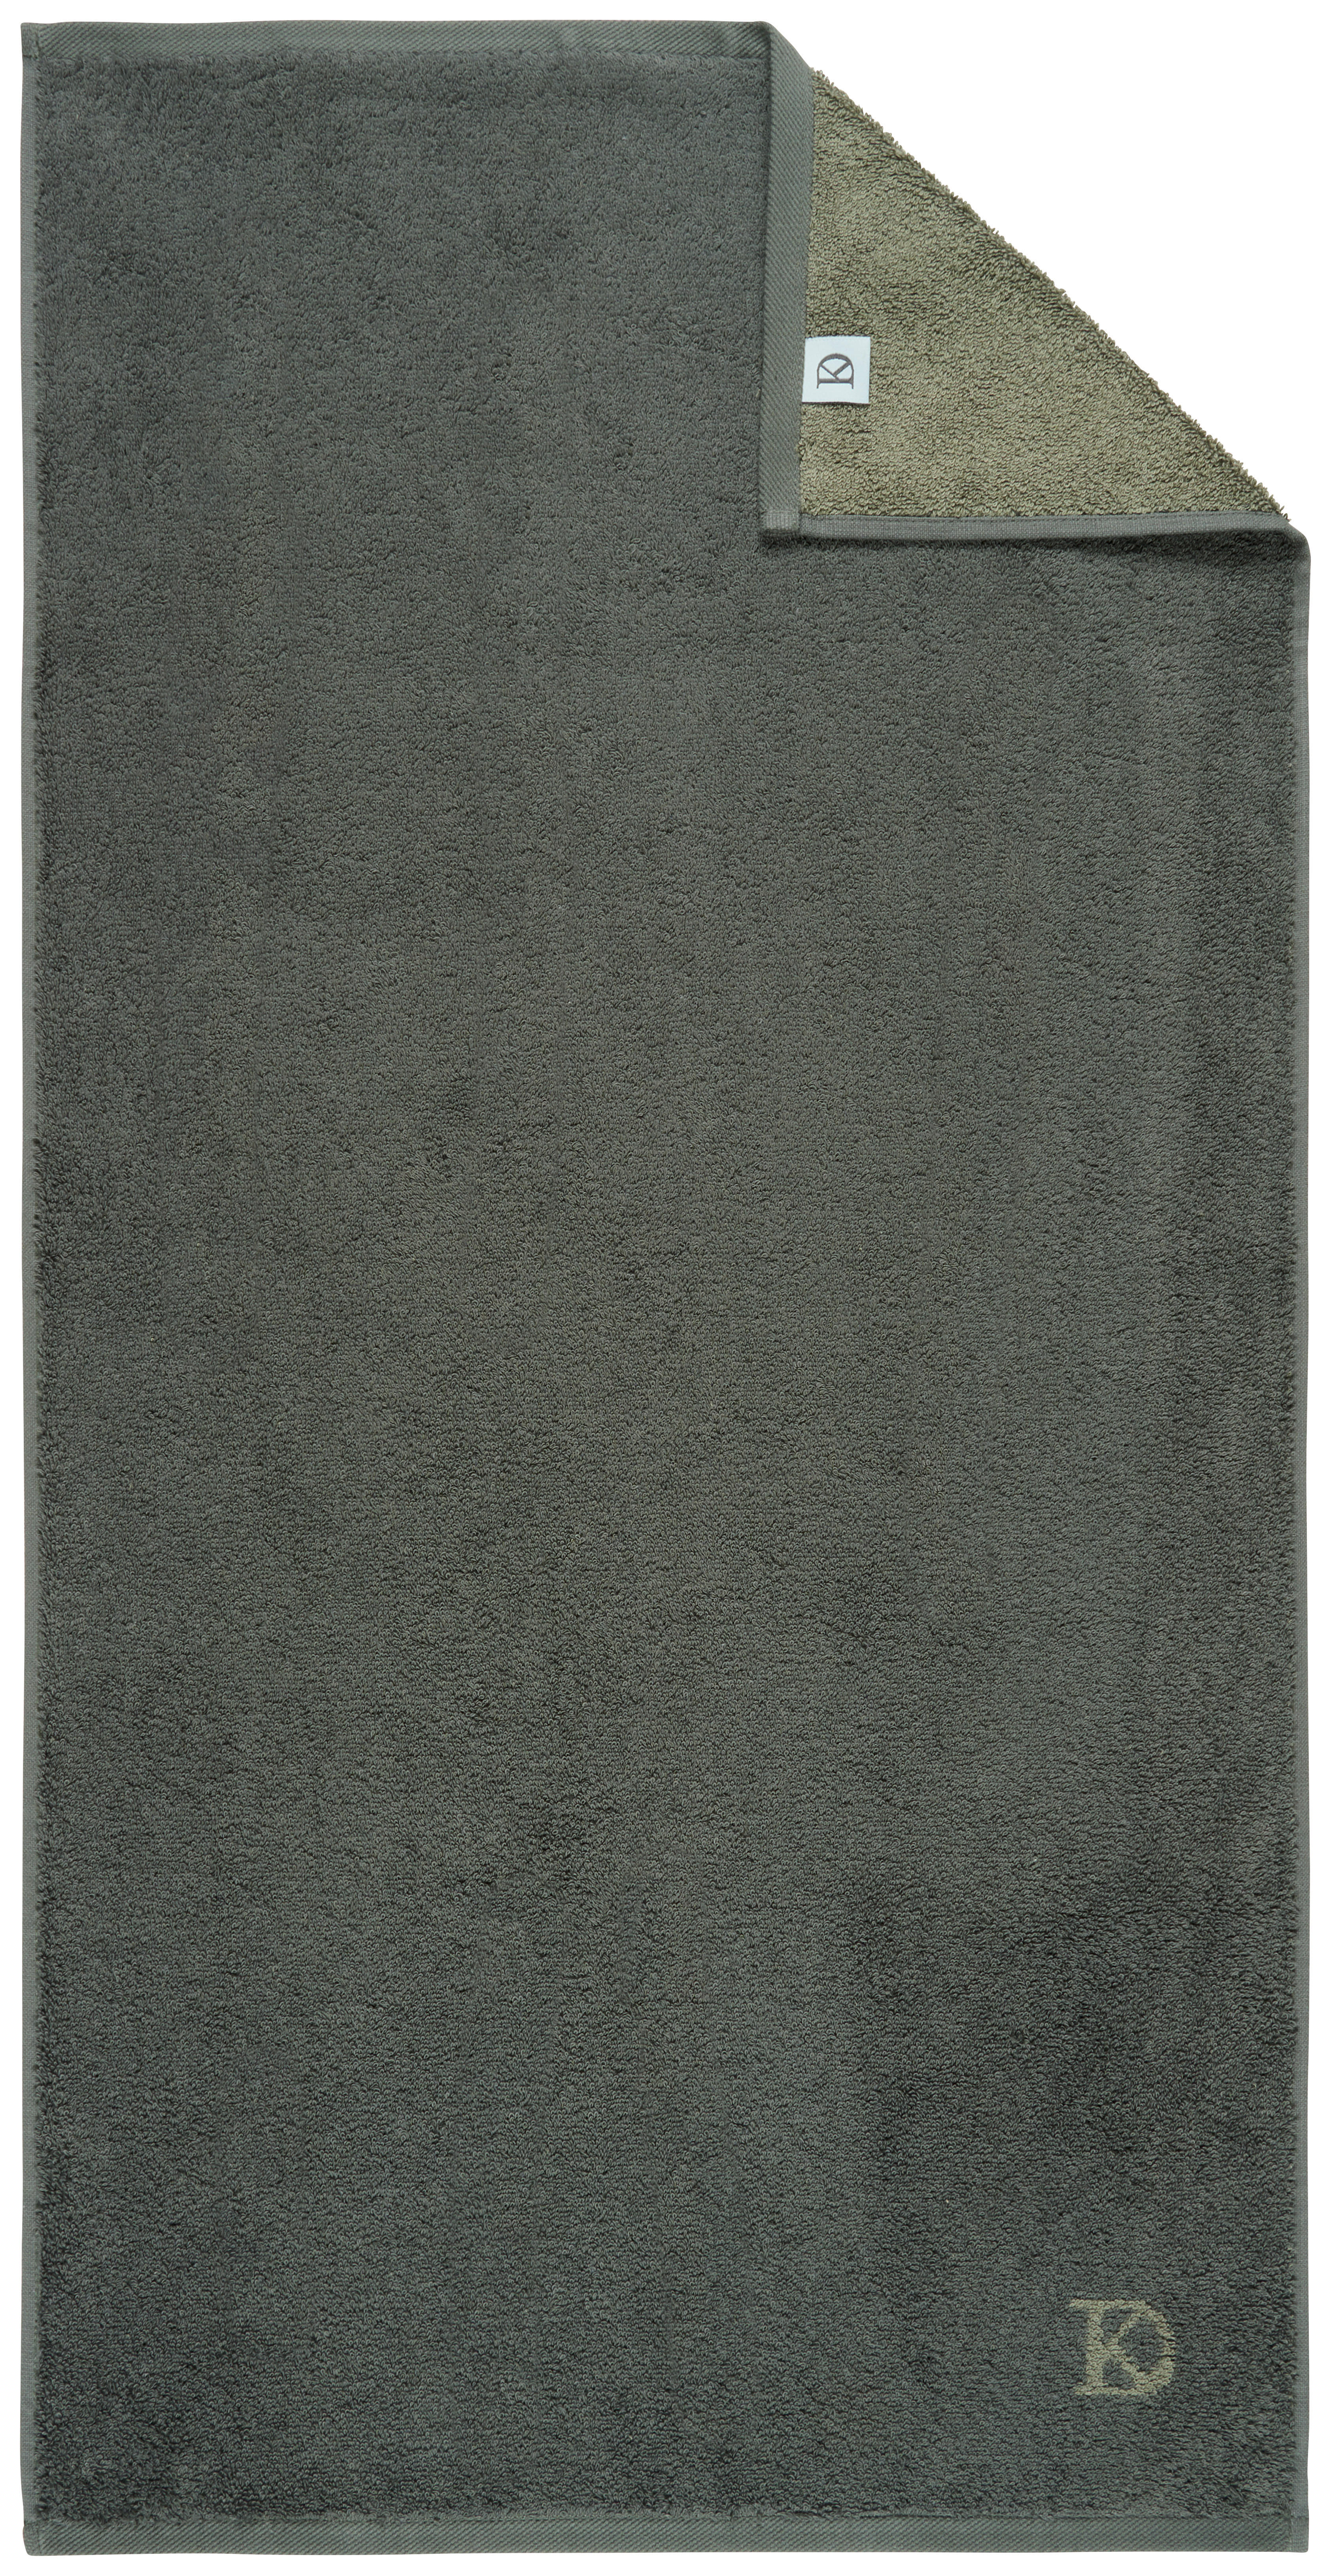 DUSCHTUCH BASIC 70/140 cm  - Dunkelgrün/Grau, Design, Textil (70/140cm) - Dieter Knoll